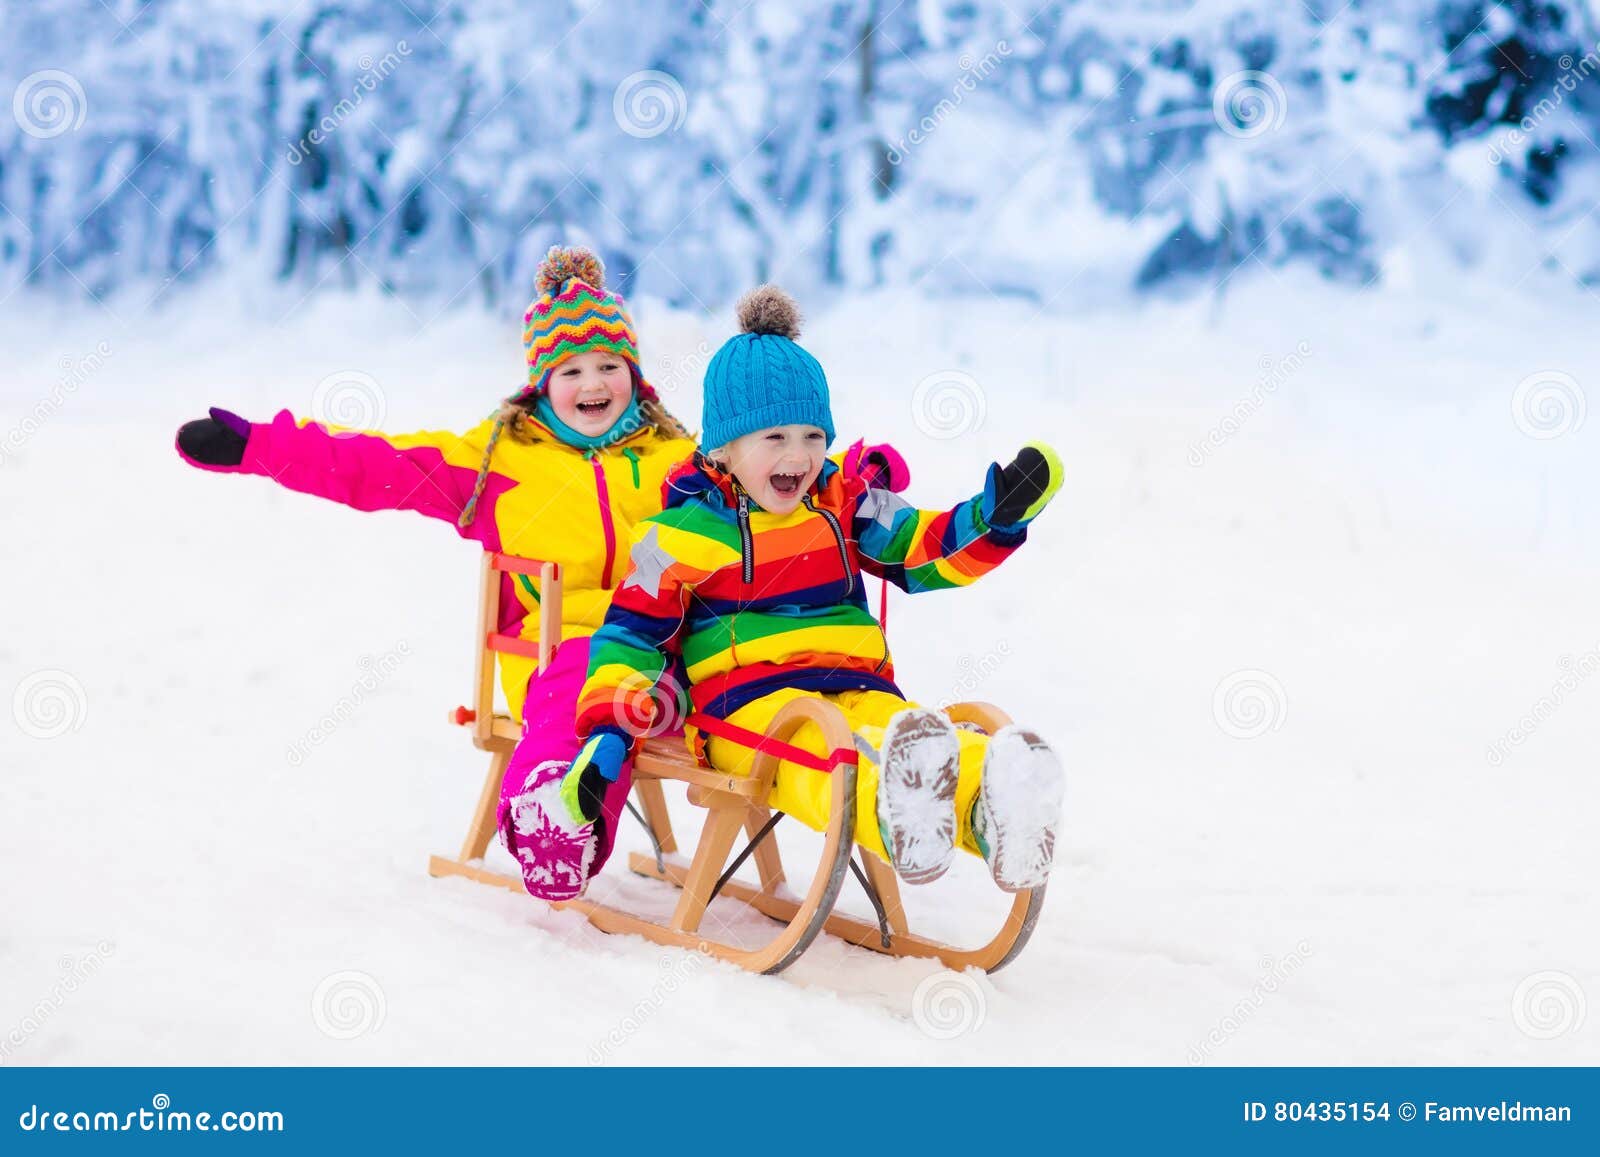 Niños Paseo En Trineo Nieve - Foto gratis en Pixabay - Pixabay